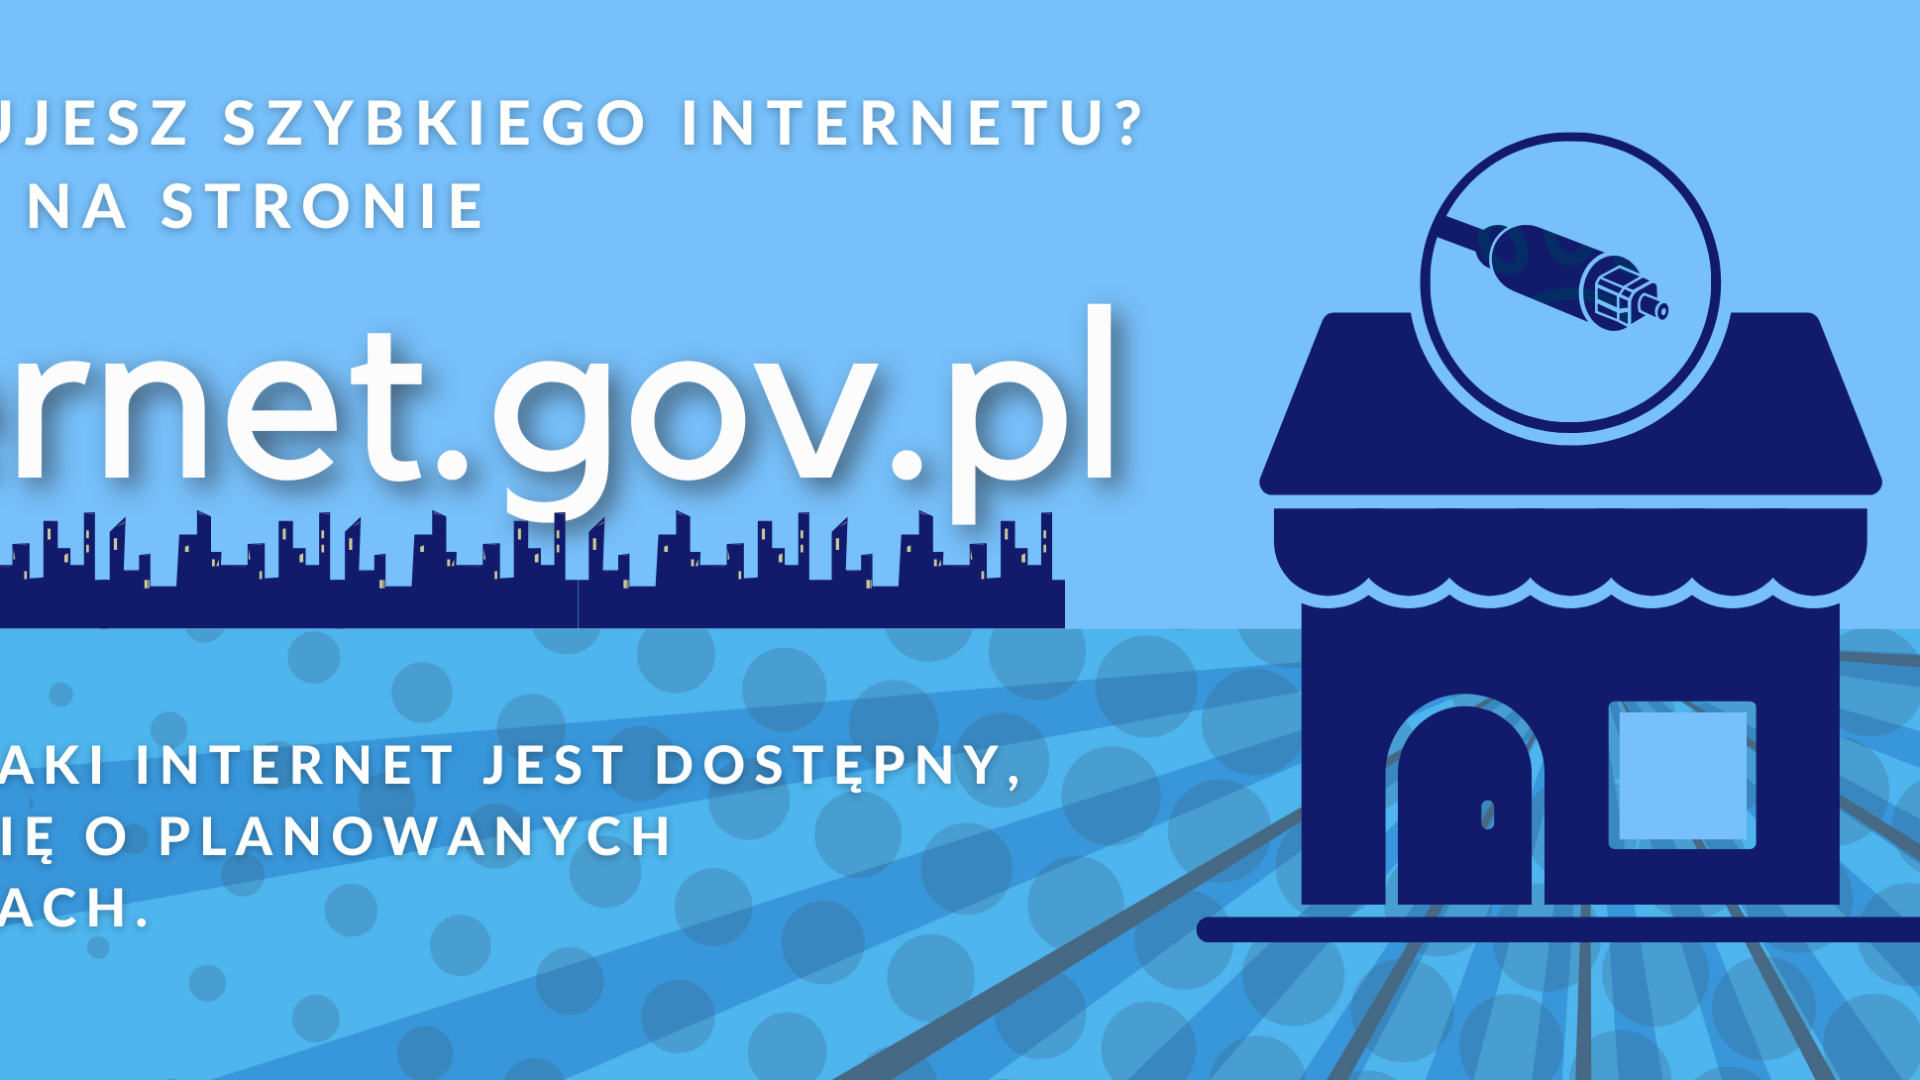 Baner reklamowy nowego portalu Ministerstwa Cyfryzacji "internet.gov.pl".